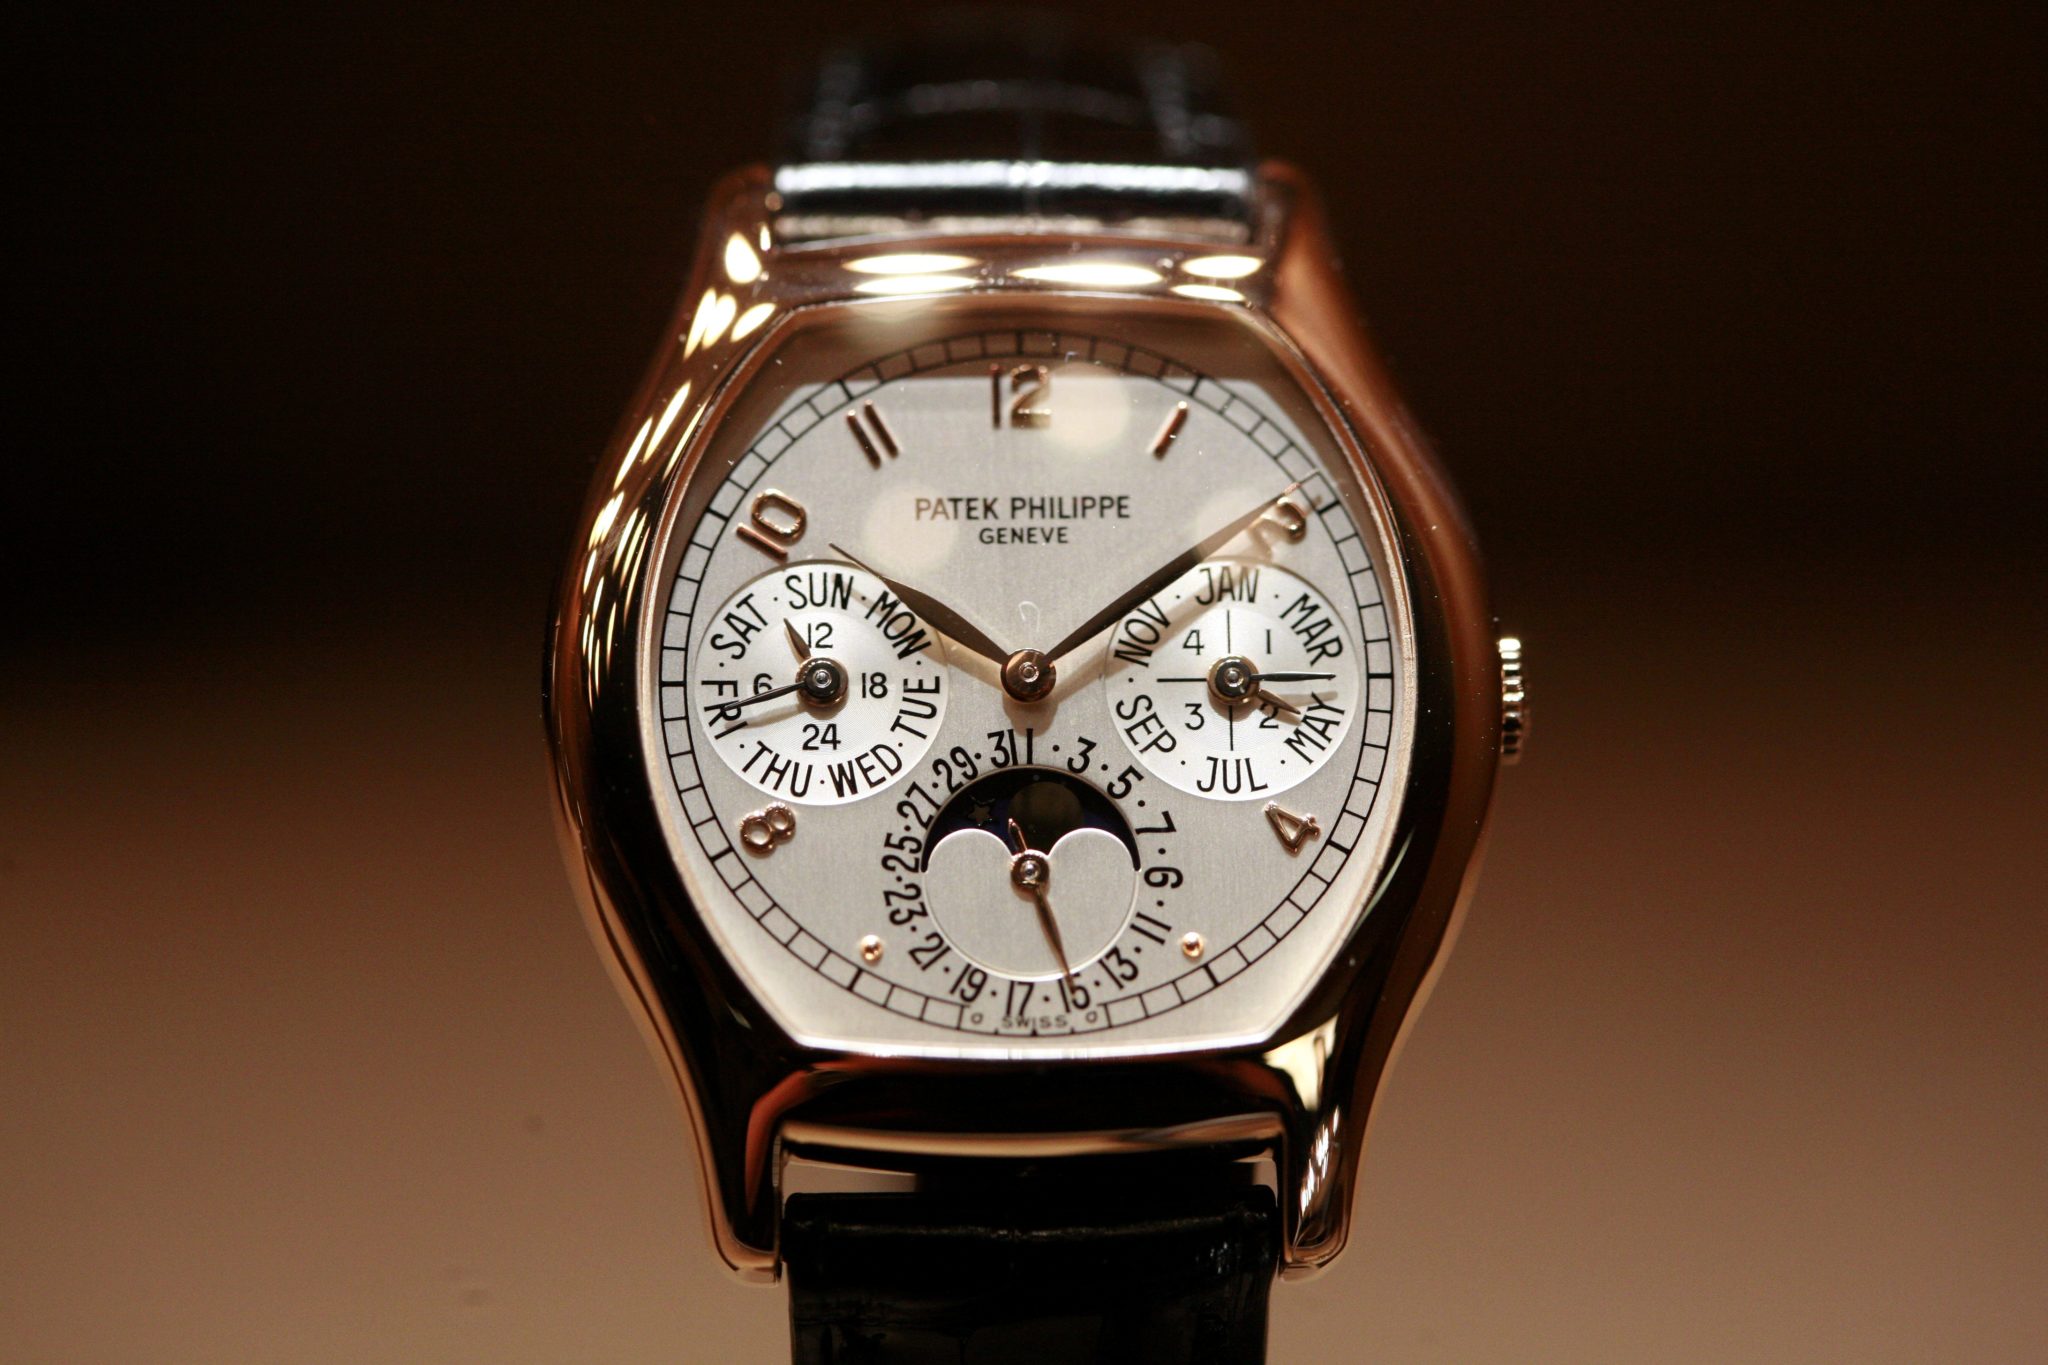 outro exemplo de um dos relógios mais caros do mundo a partir de 2022 - 2023  